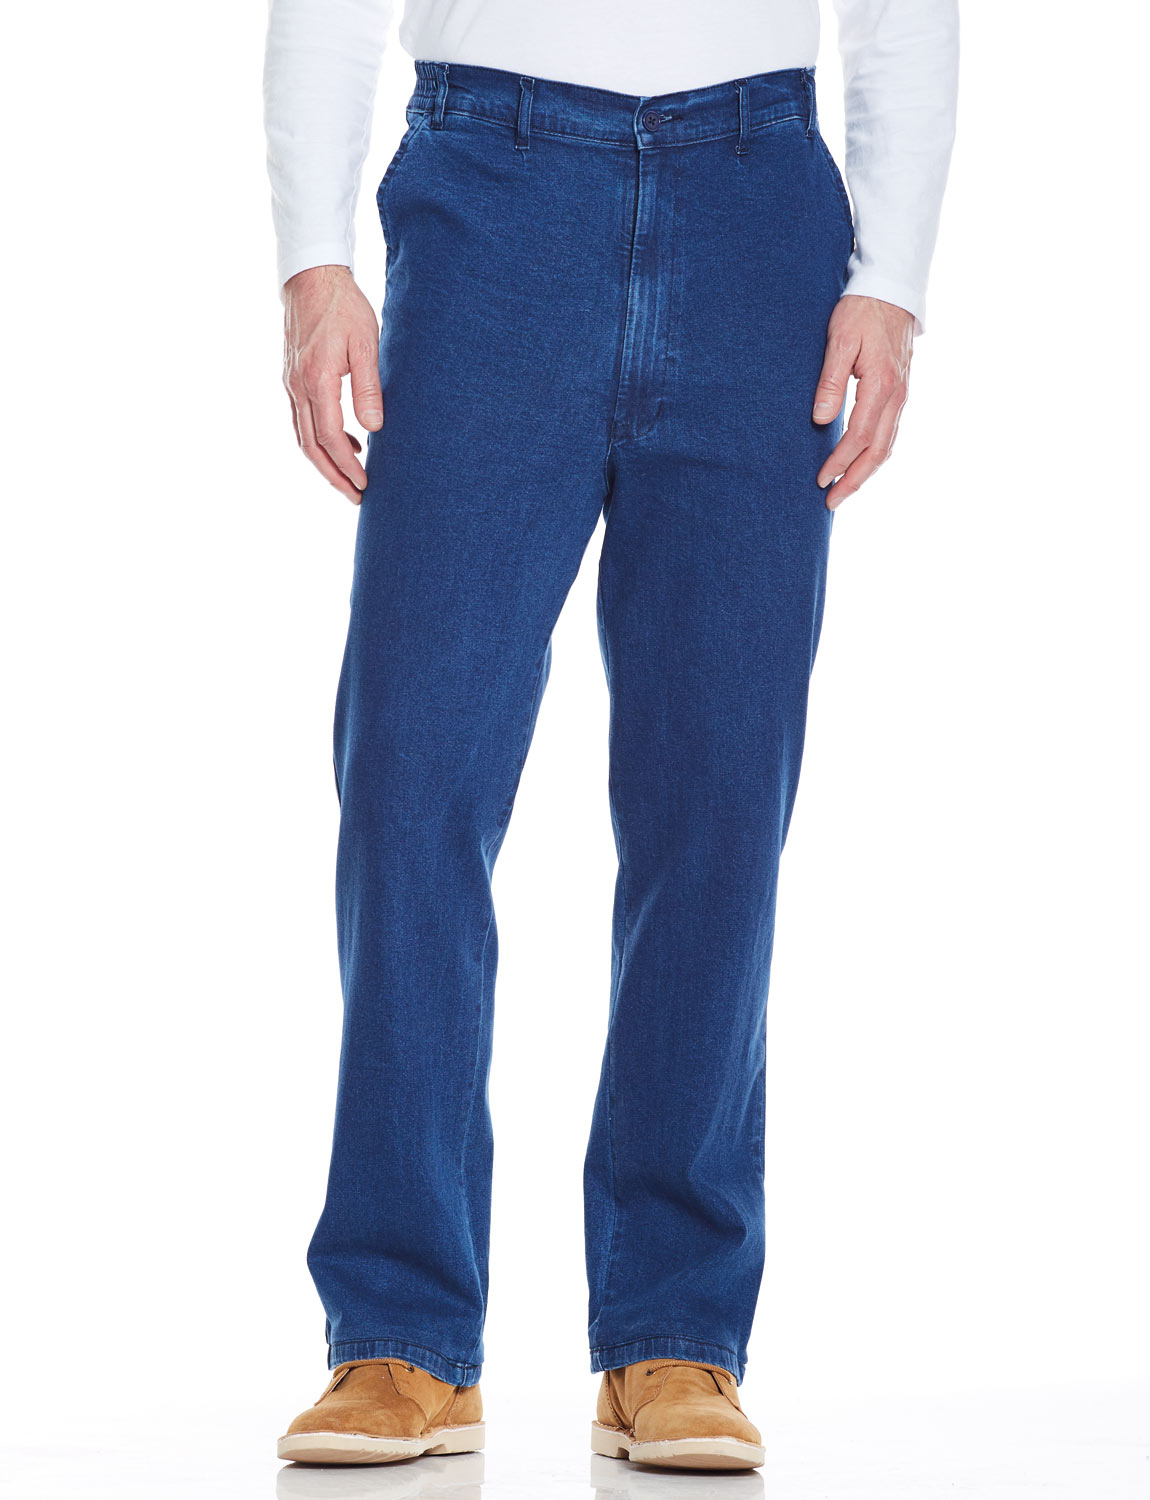 Mens High - Rise Denim Elasticated Stretch Cotton Jean | eBay